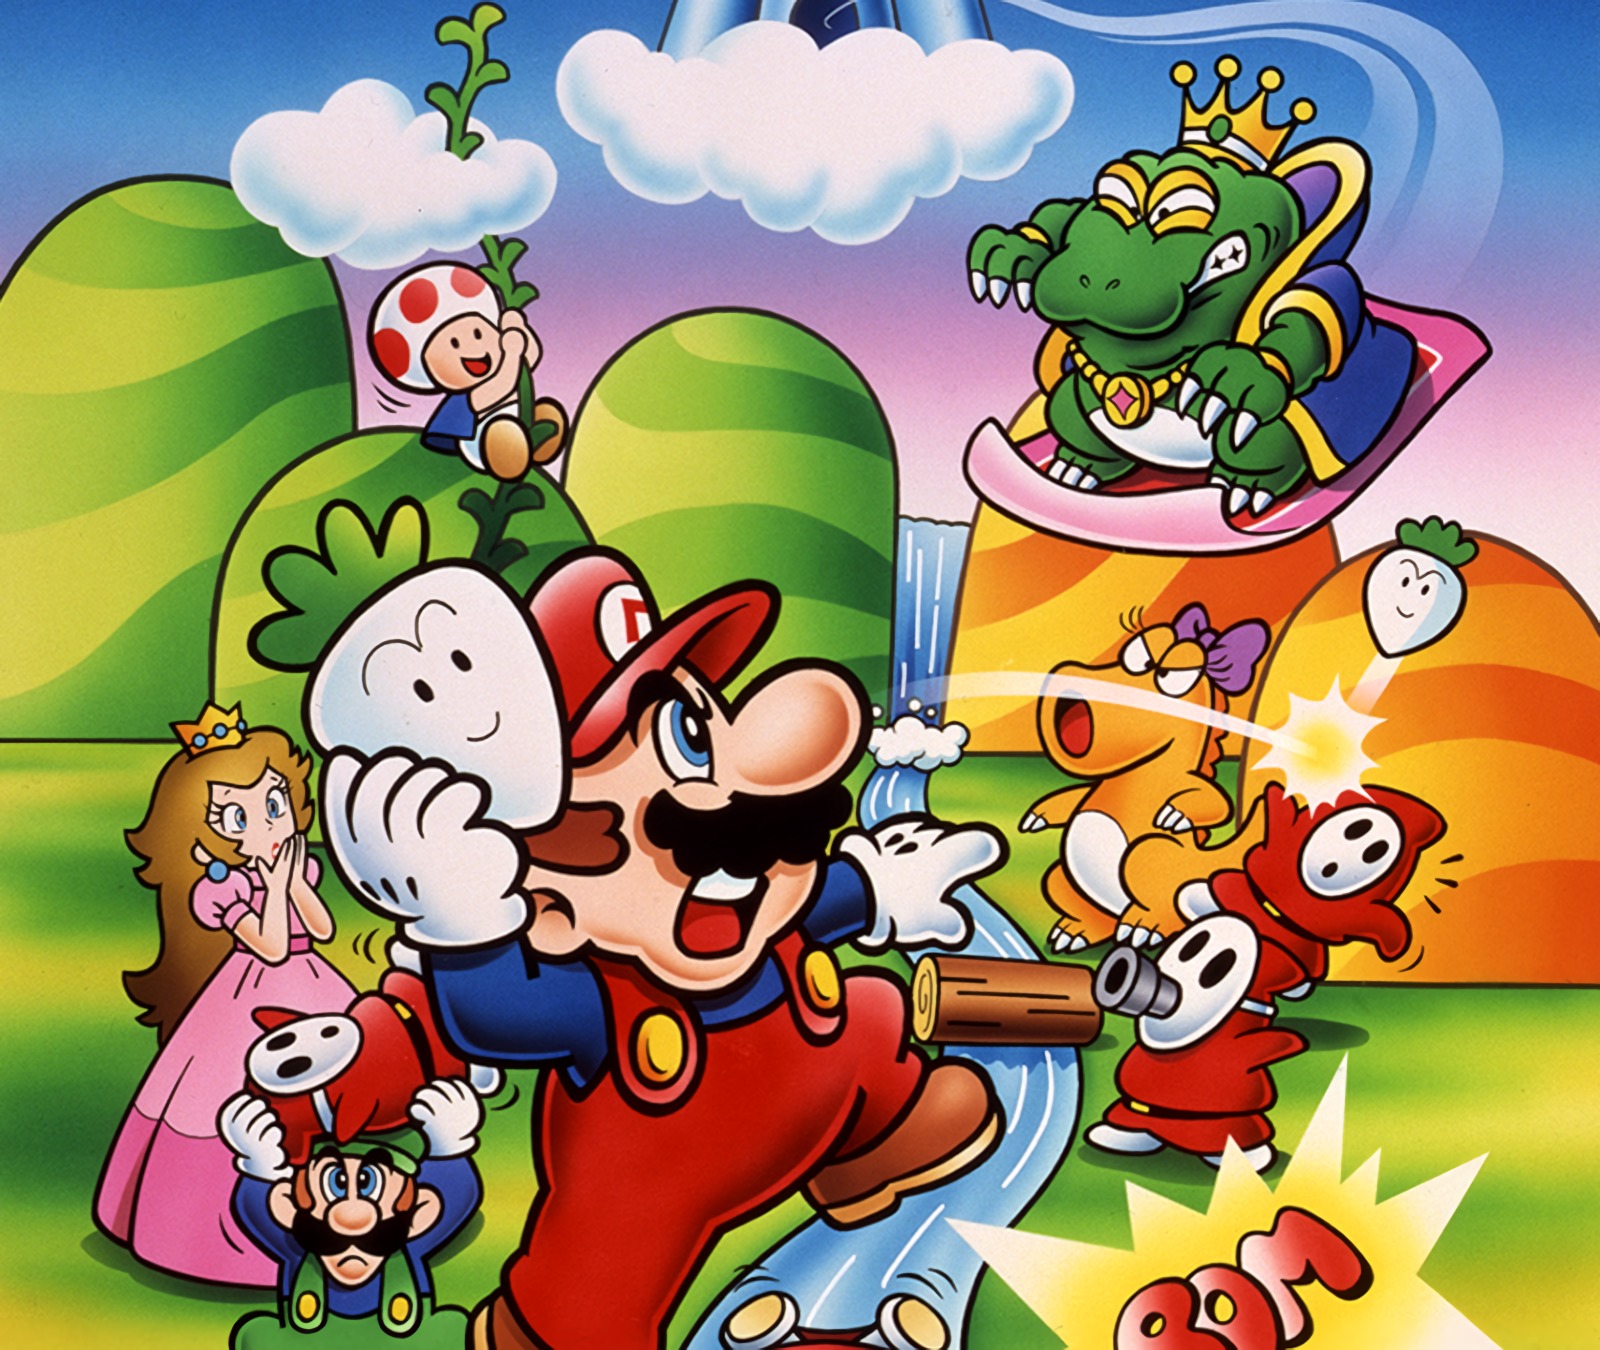 Mario brothers. Super Mario Bros. 2. Супер Марио БРОС. Супер Марио БРОС 1988. Super Mario Bros 2 super Mario World.